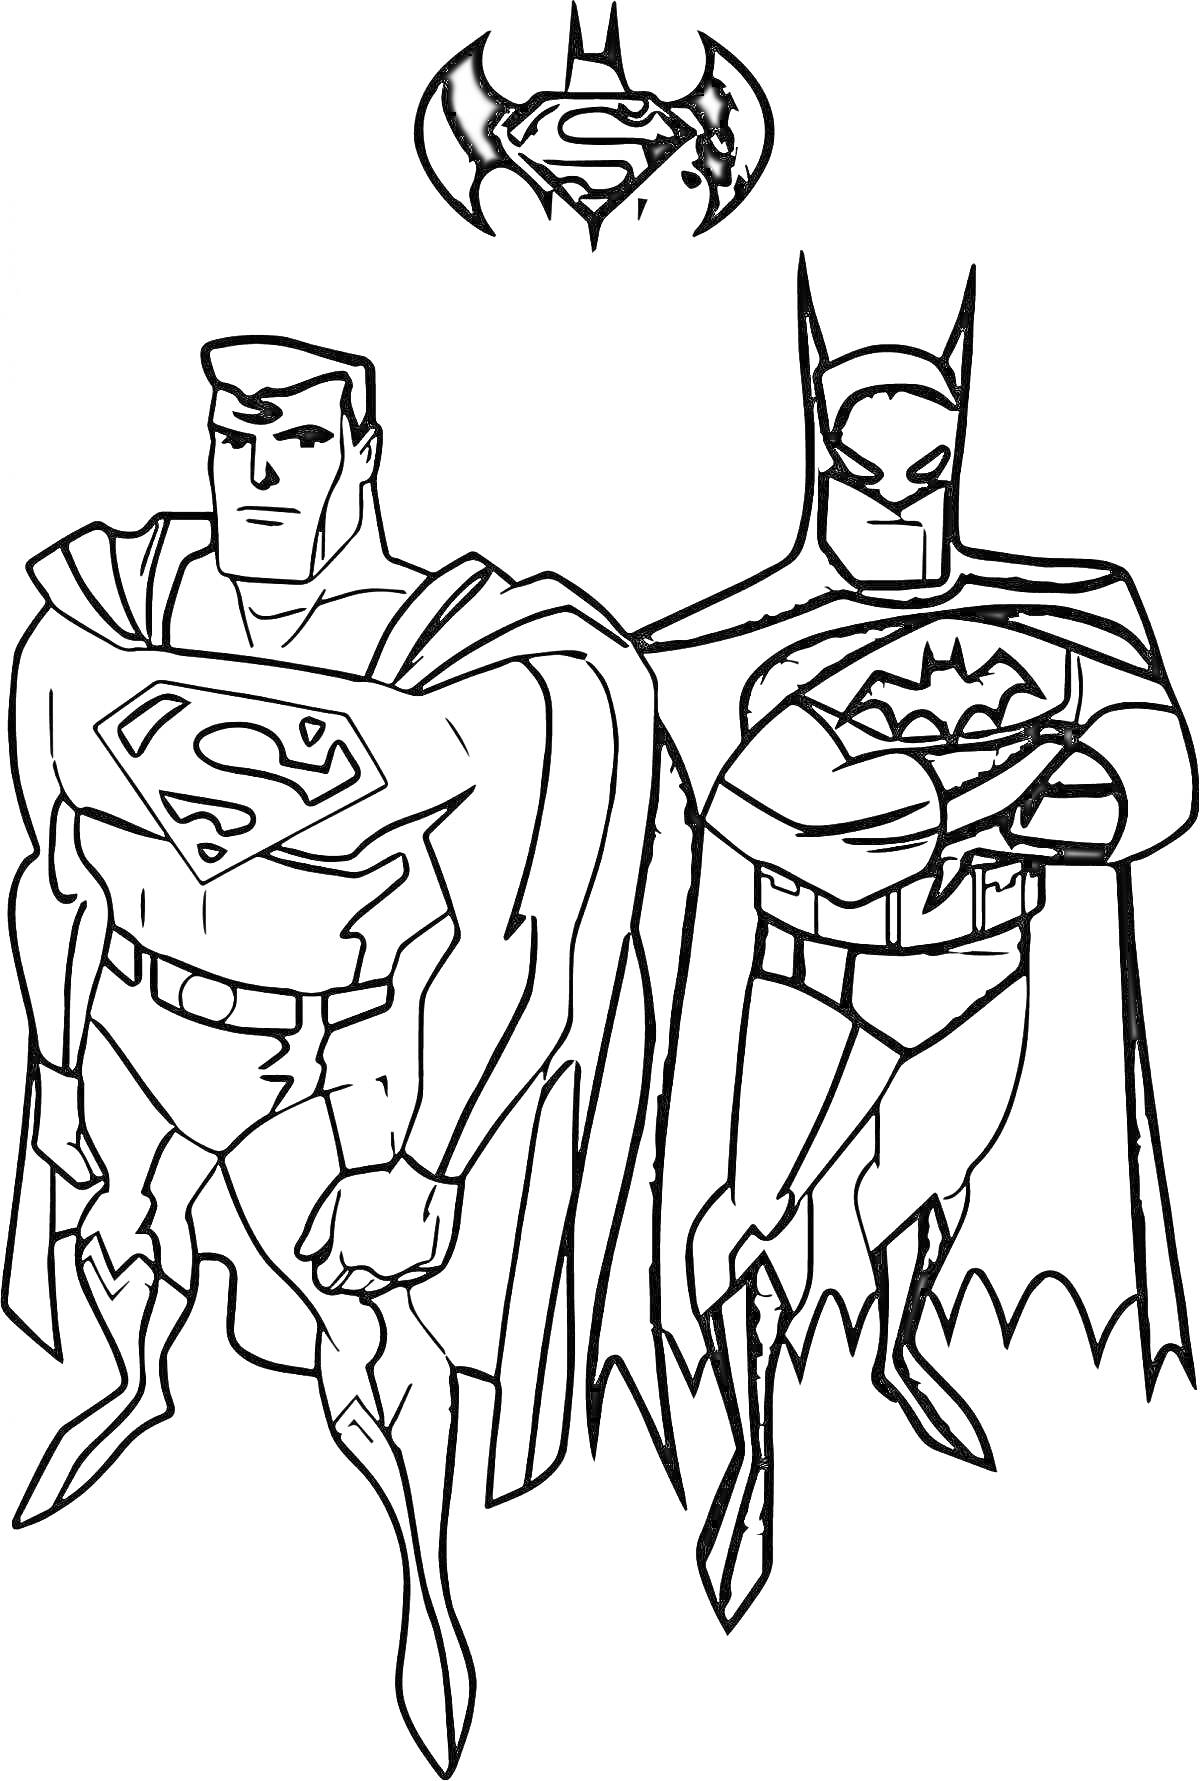 Раскраска Супермен и Бэтмен с эмблемой сверху